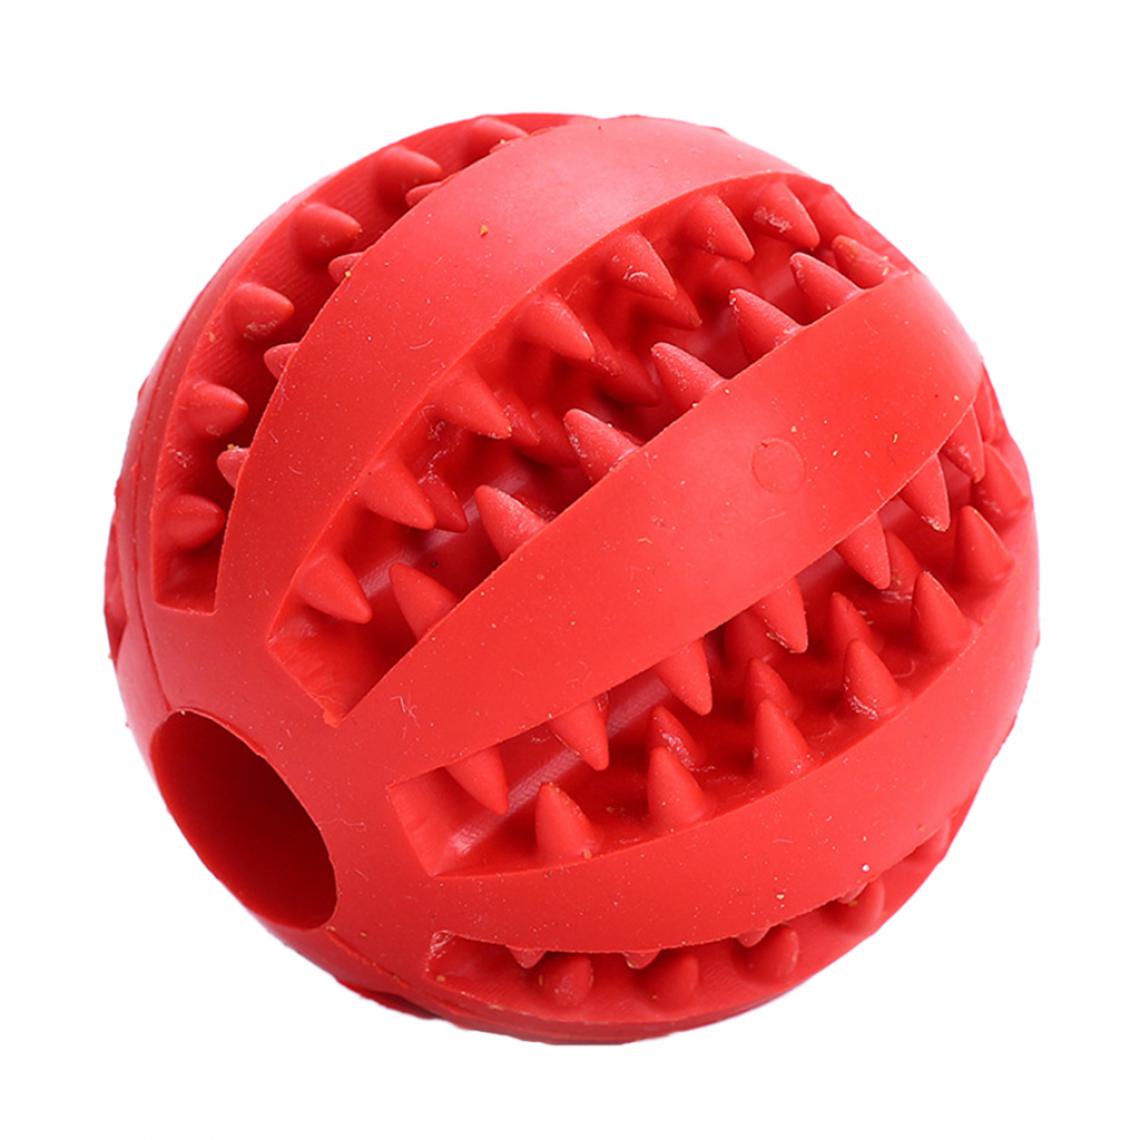 marque generique - 7cm en caoutchouc balle mâcher traiter nettoyage chien formation dents jouet rouge - Jouet pour chien